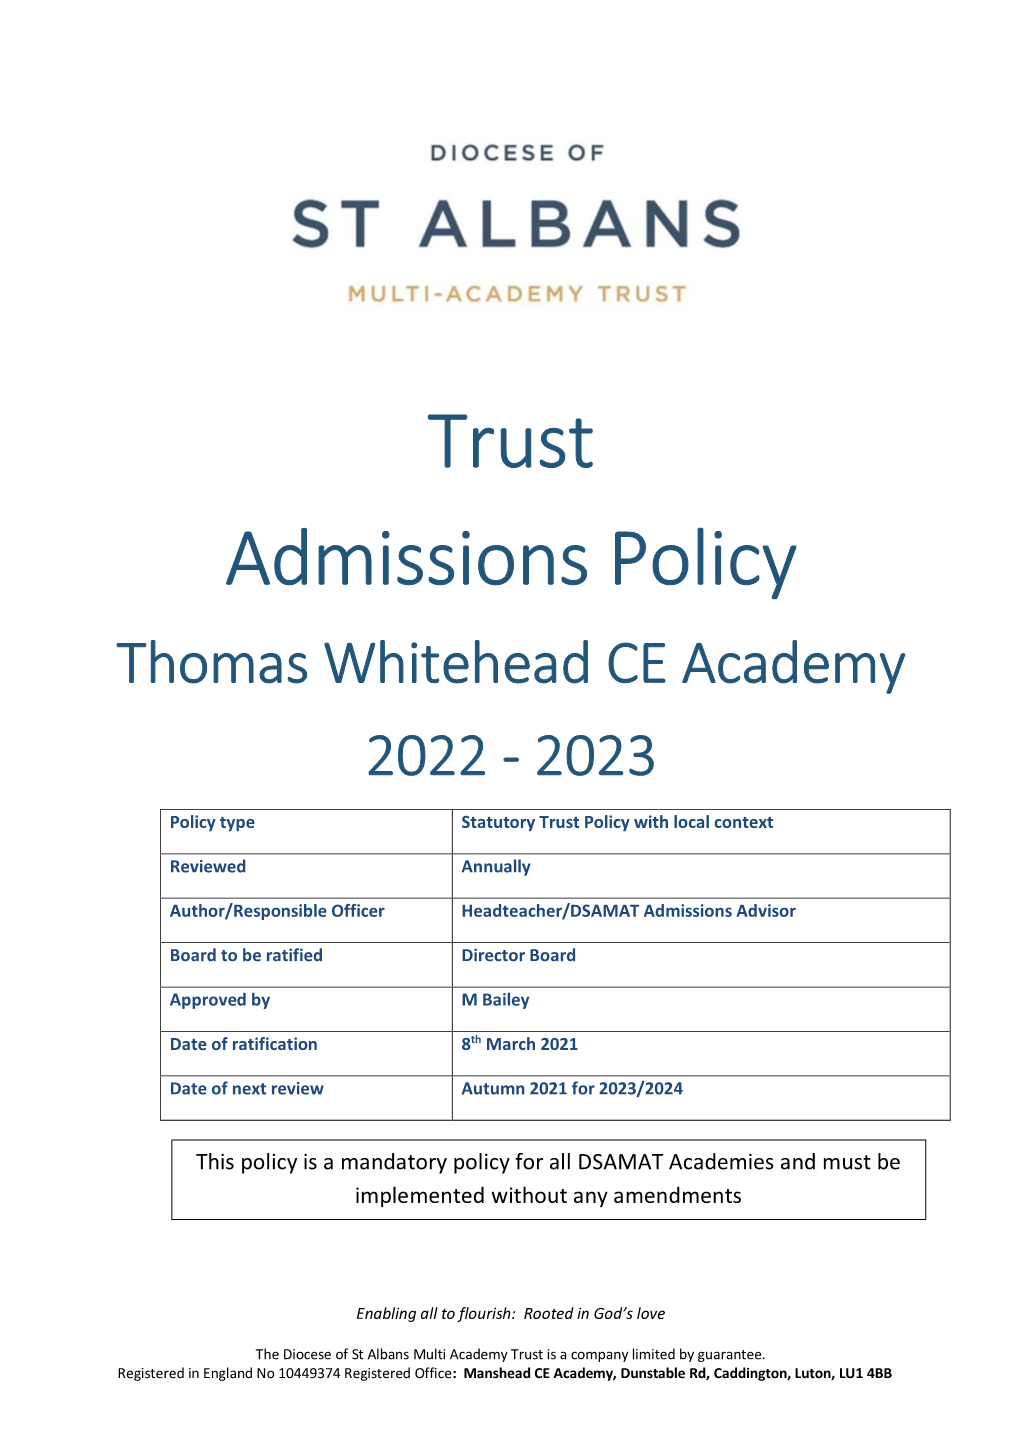 Thomas Whitehead Admission Policy 2022 to 2023